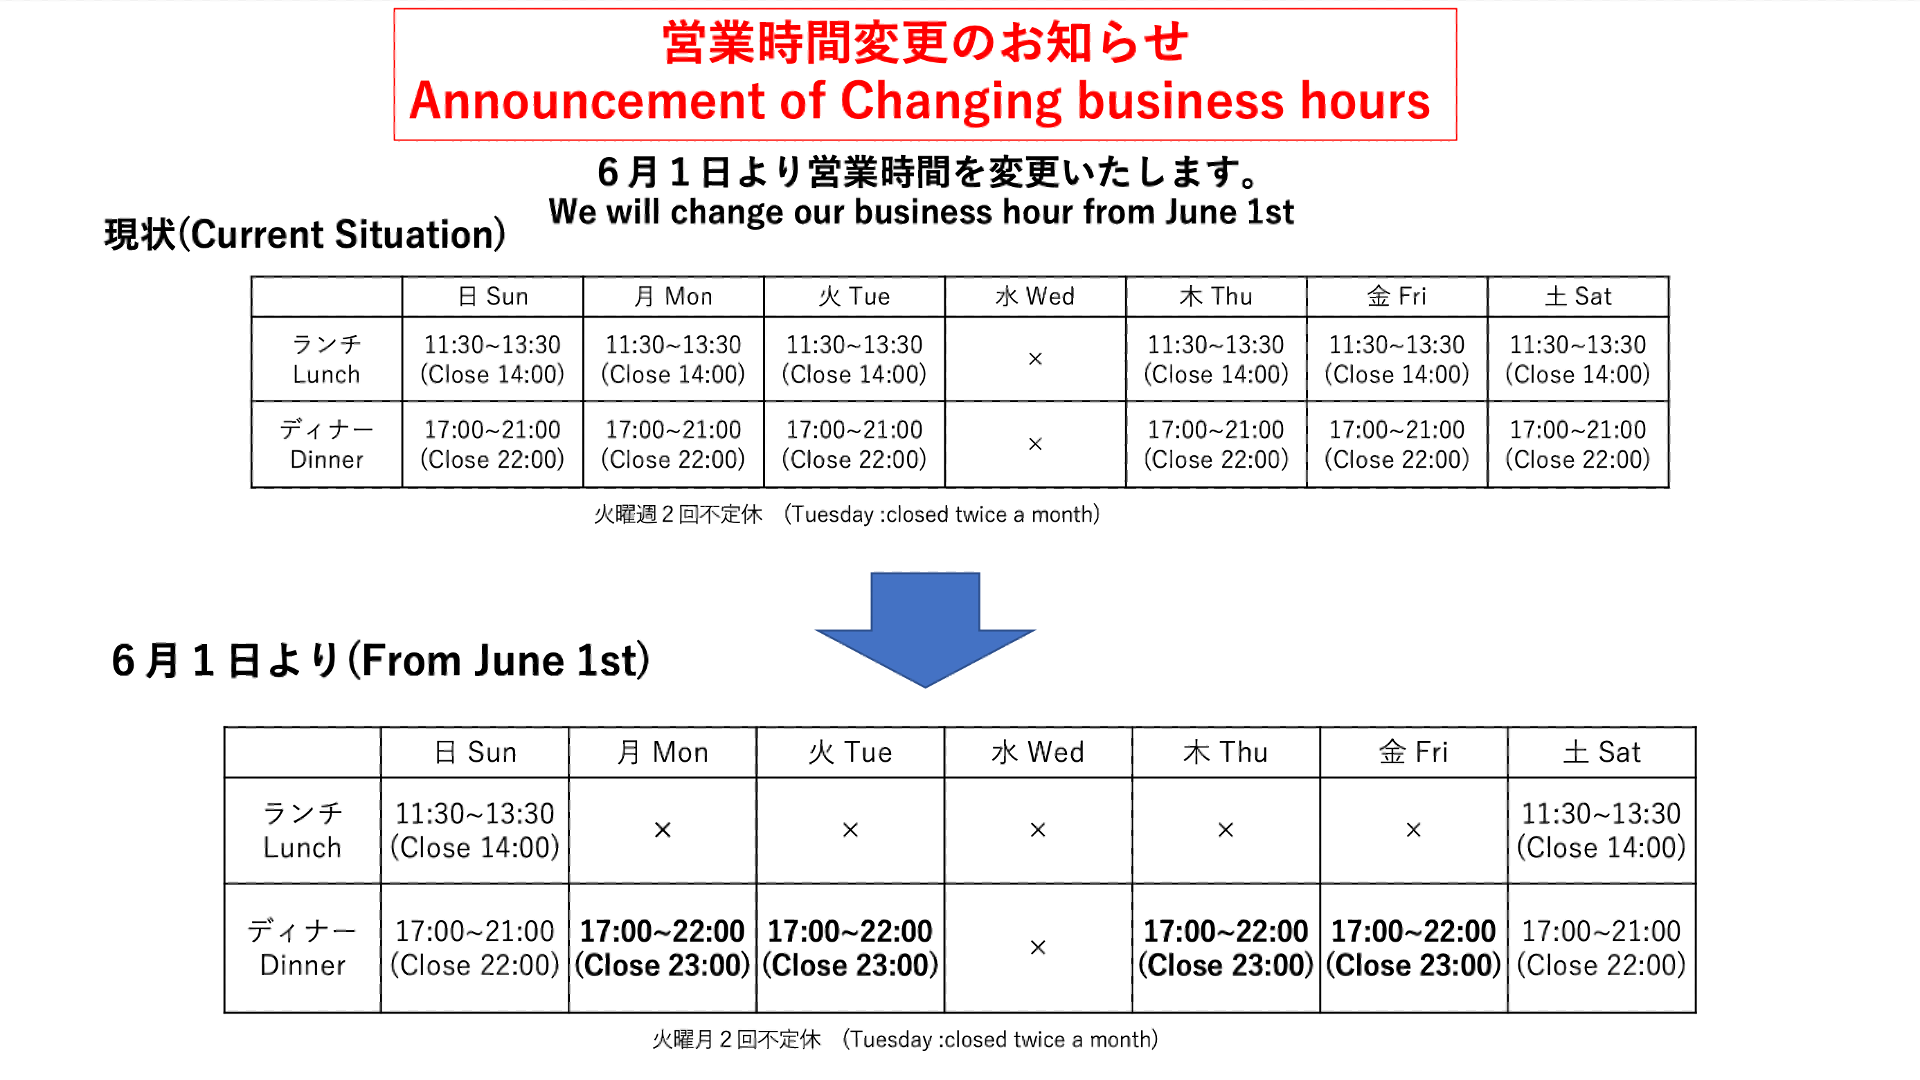 営業時間変更のお知らせ( Announcement of Changing business hours)